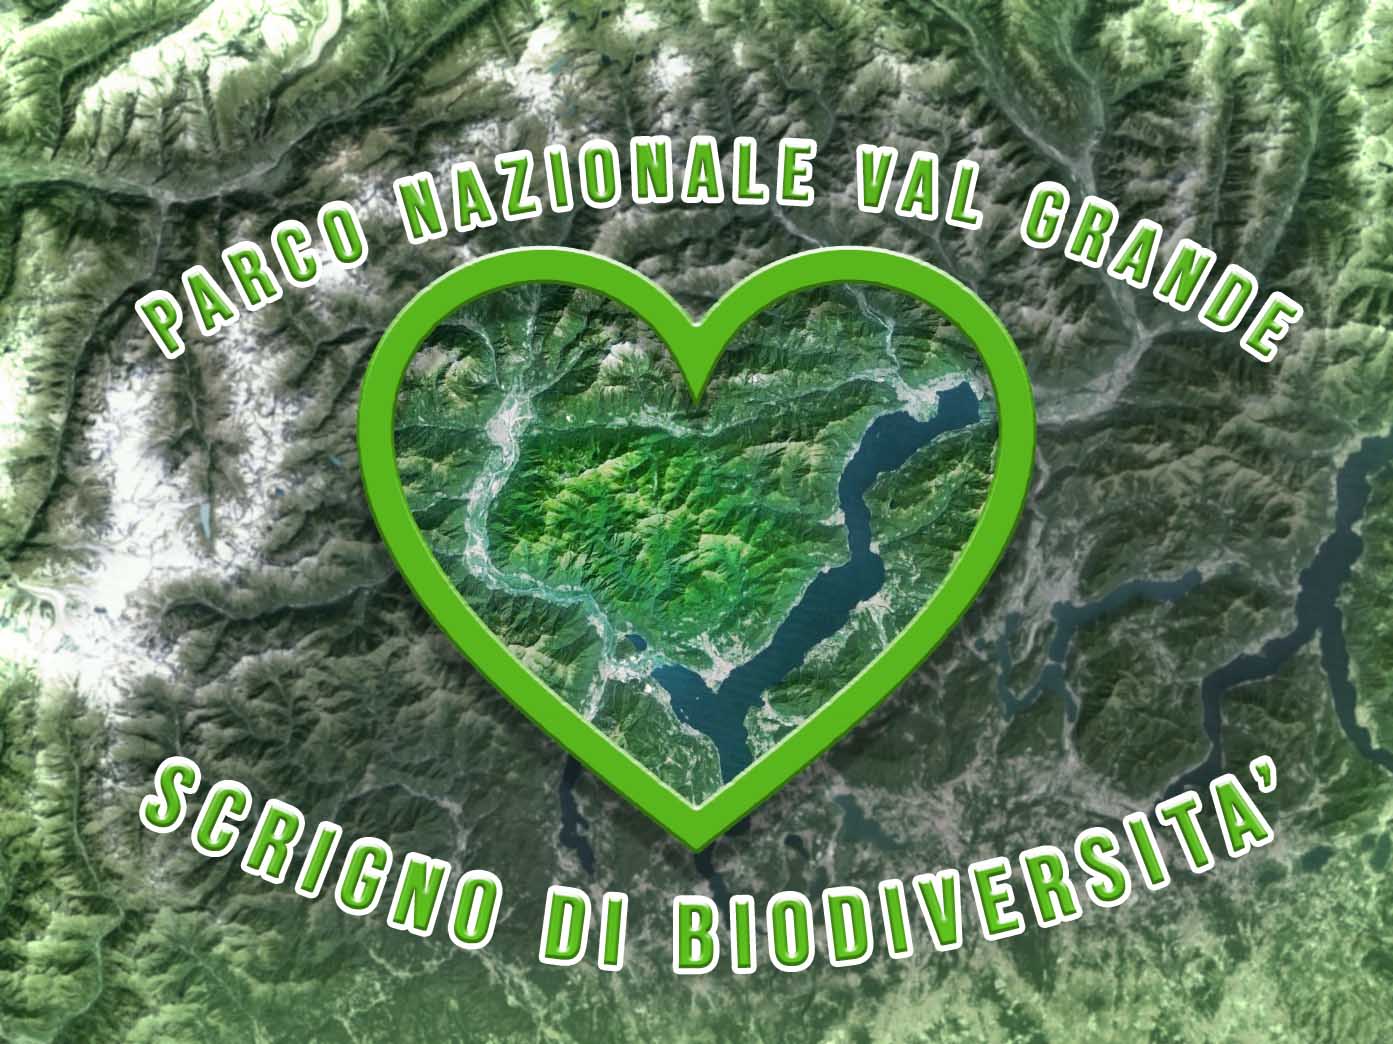 Oggi si celebra la Giornata mondiale della biodiversità